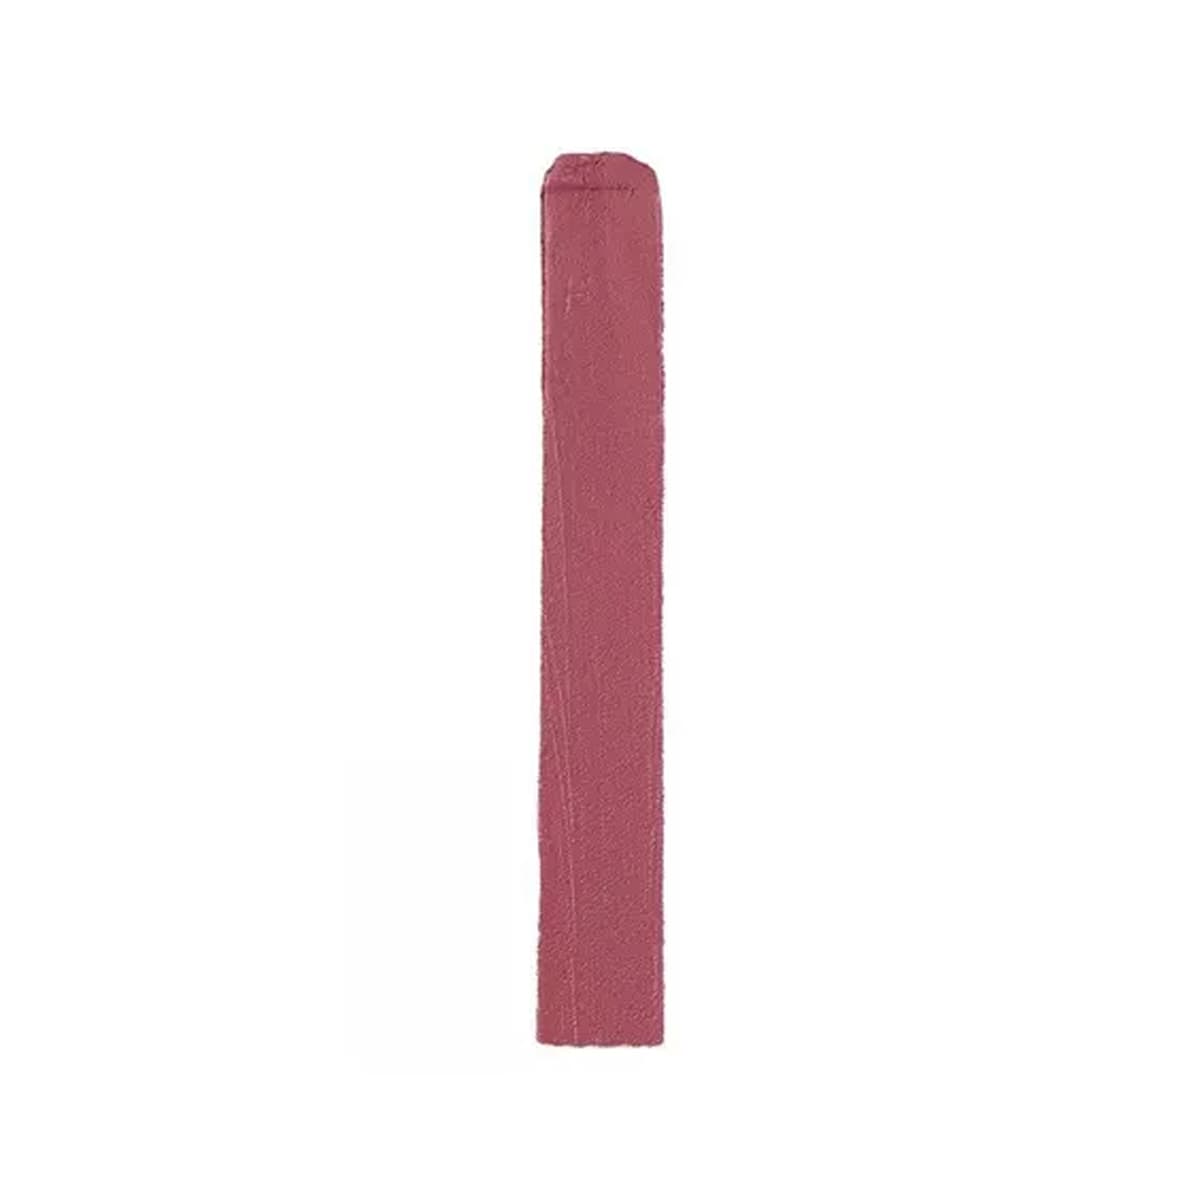 L'Oréal, Colour Riche, Intense Volume Matte Lipstick, 143 Le Mauve Indomptable, 0.06 oz (1.8 g)